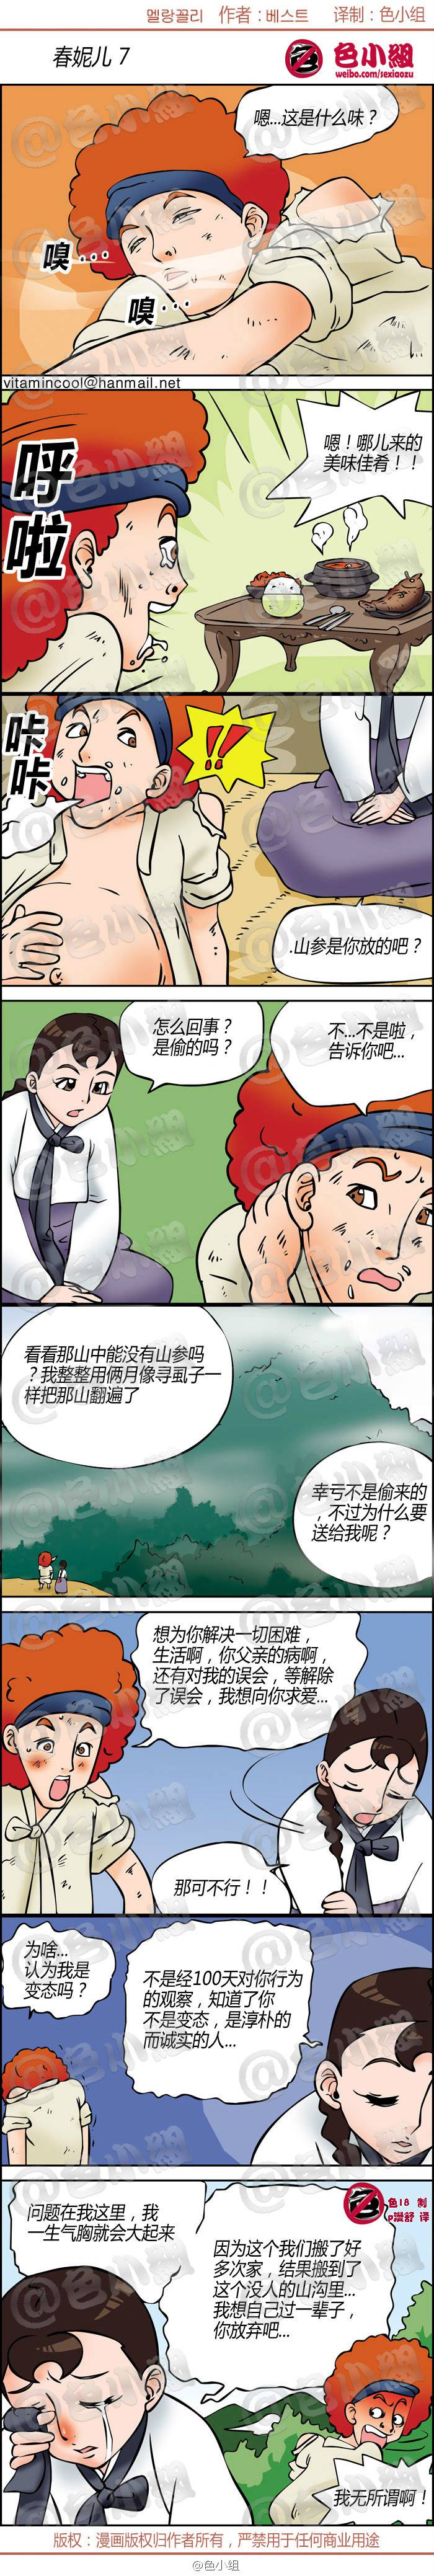 邪恶漫画爆笑囧图第281刊：偷内裤的小偷